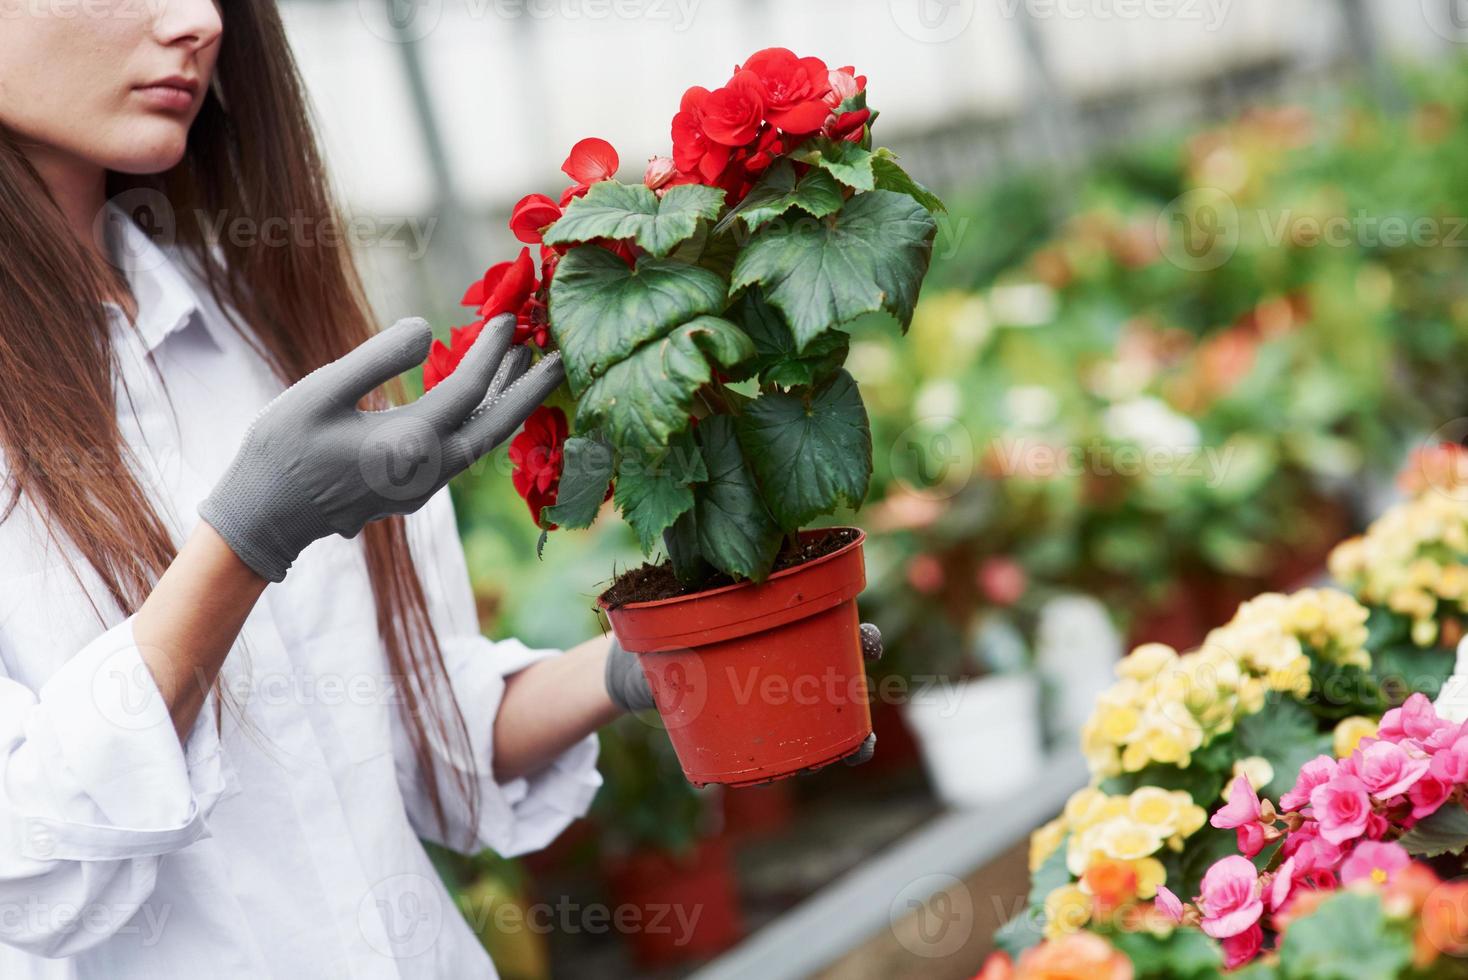 cuidar das plantas. garota com luvas nas mãos segurando um vaso com flores vermelhas foto